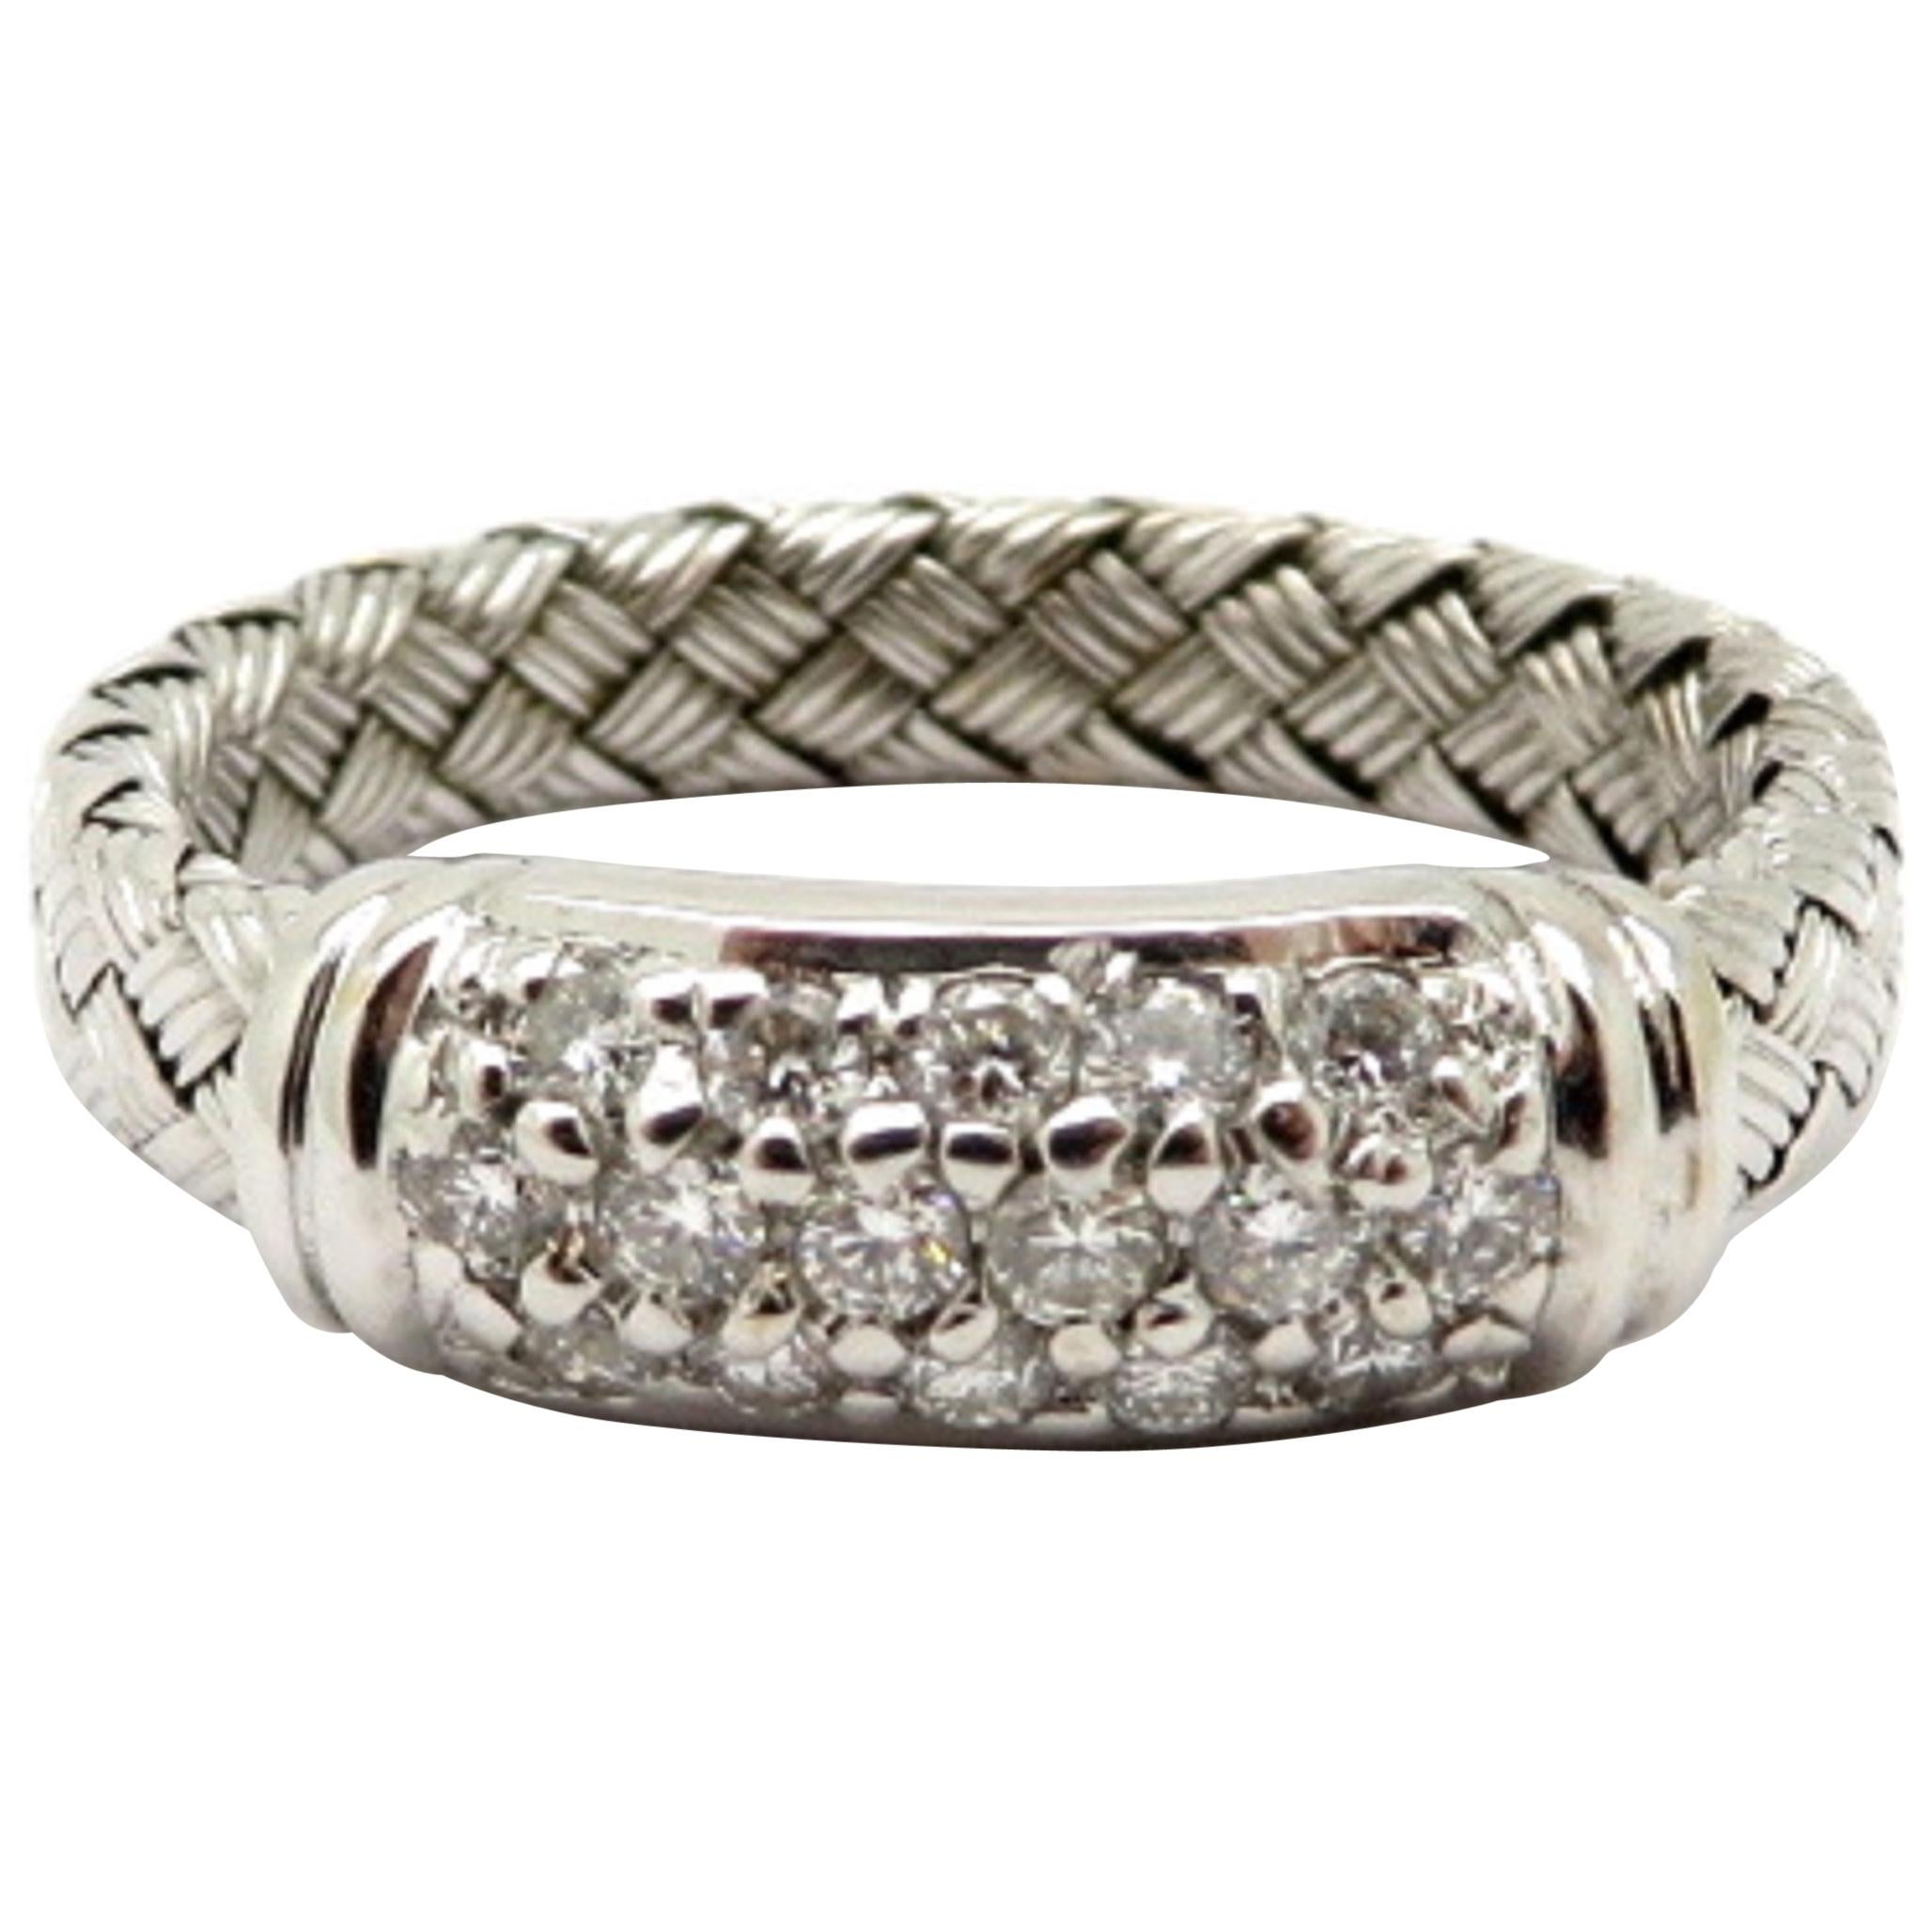 Designer Roberto Coin 18 Karat White Gold Pave Diamond Weaved Ring